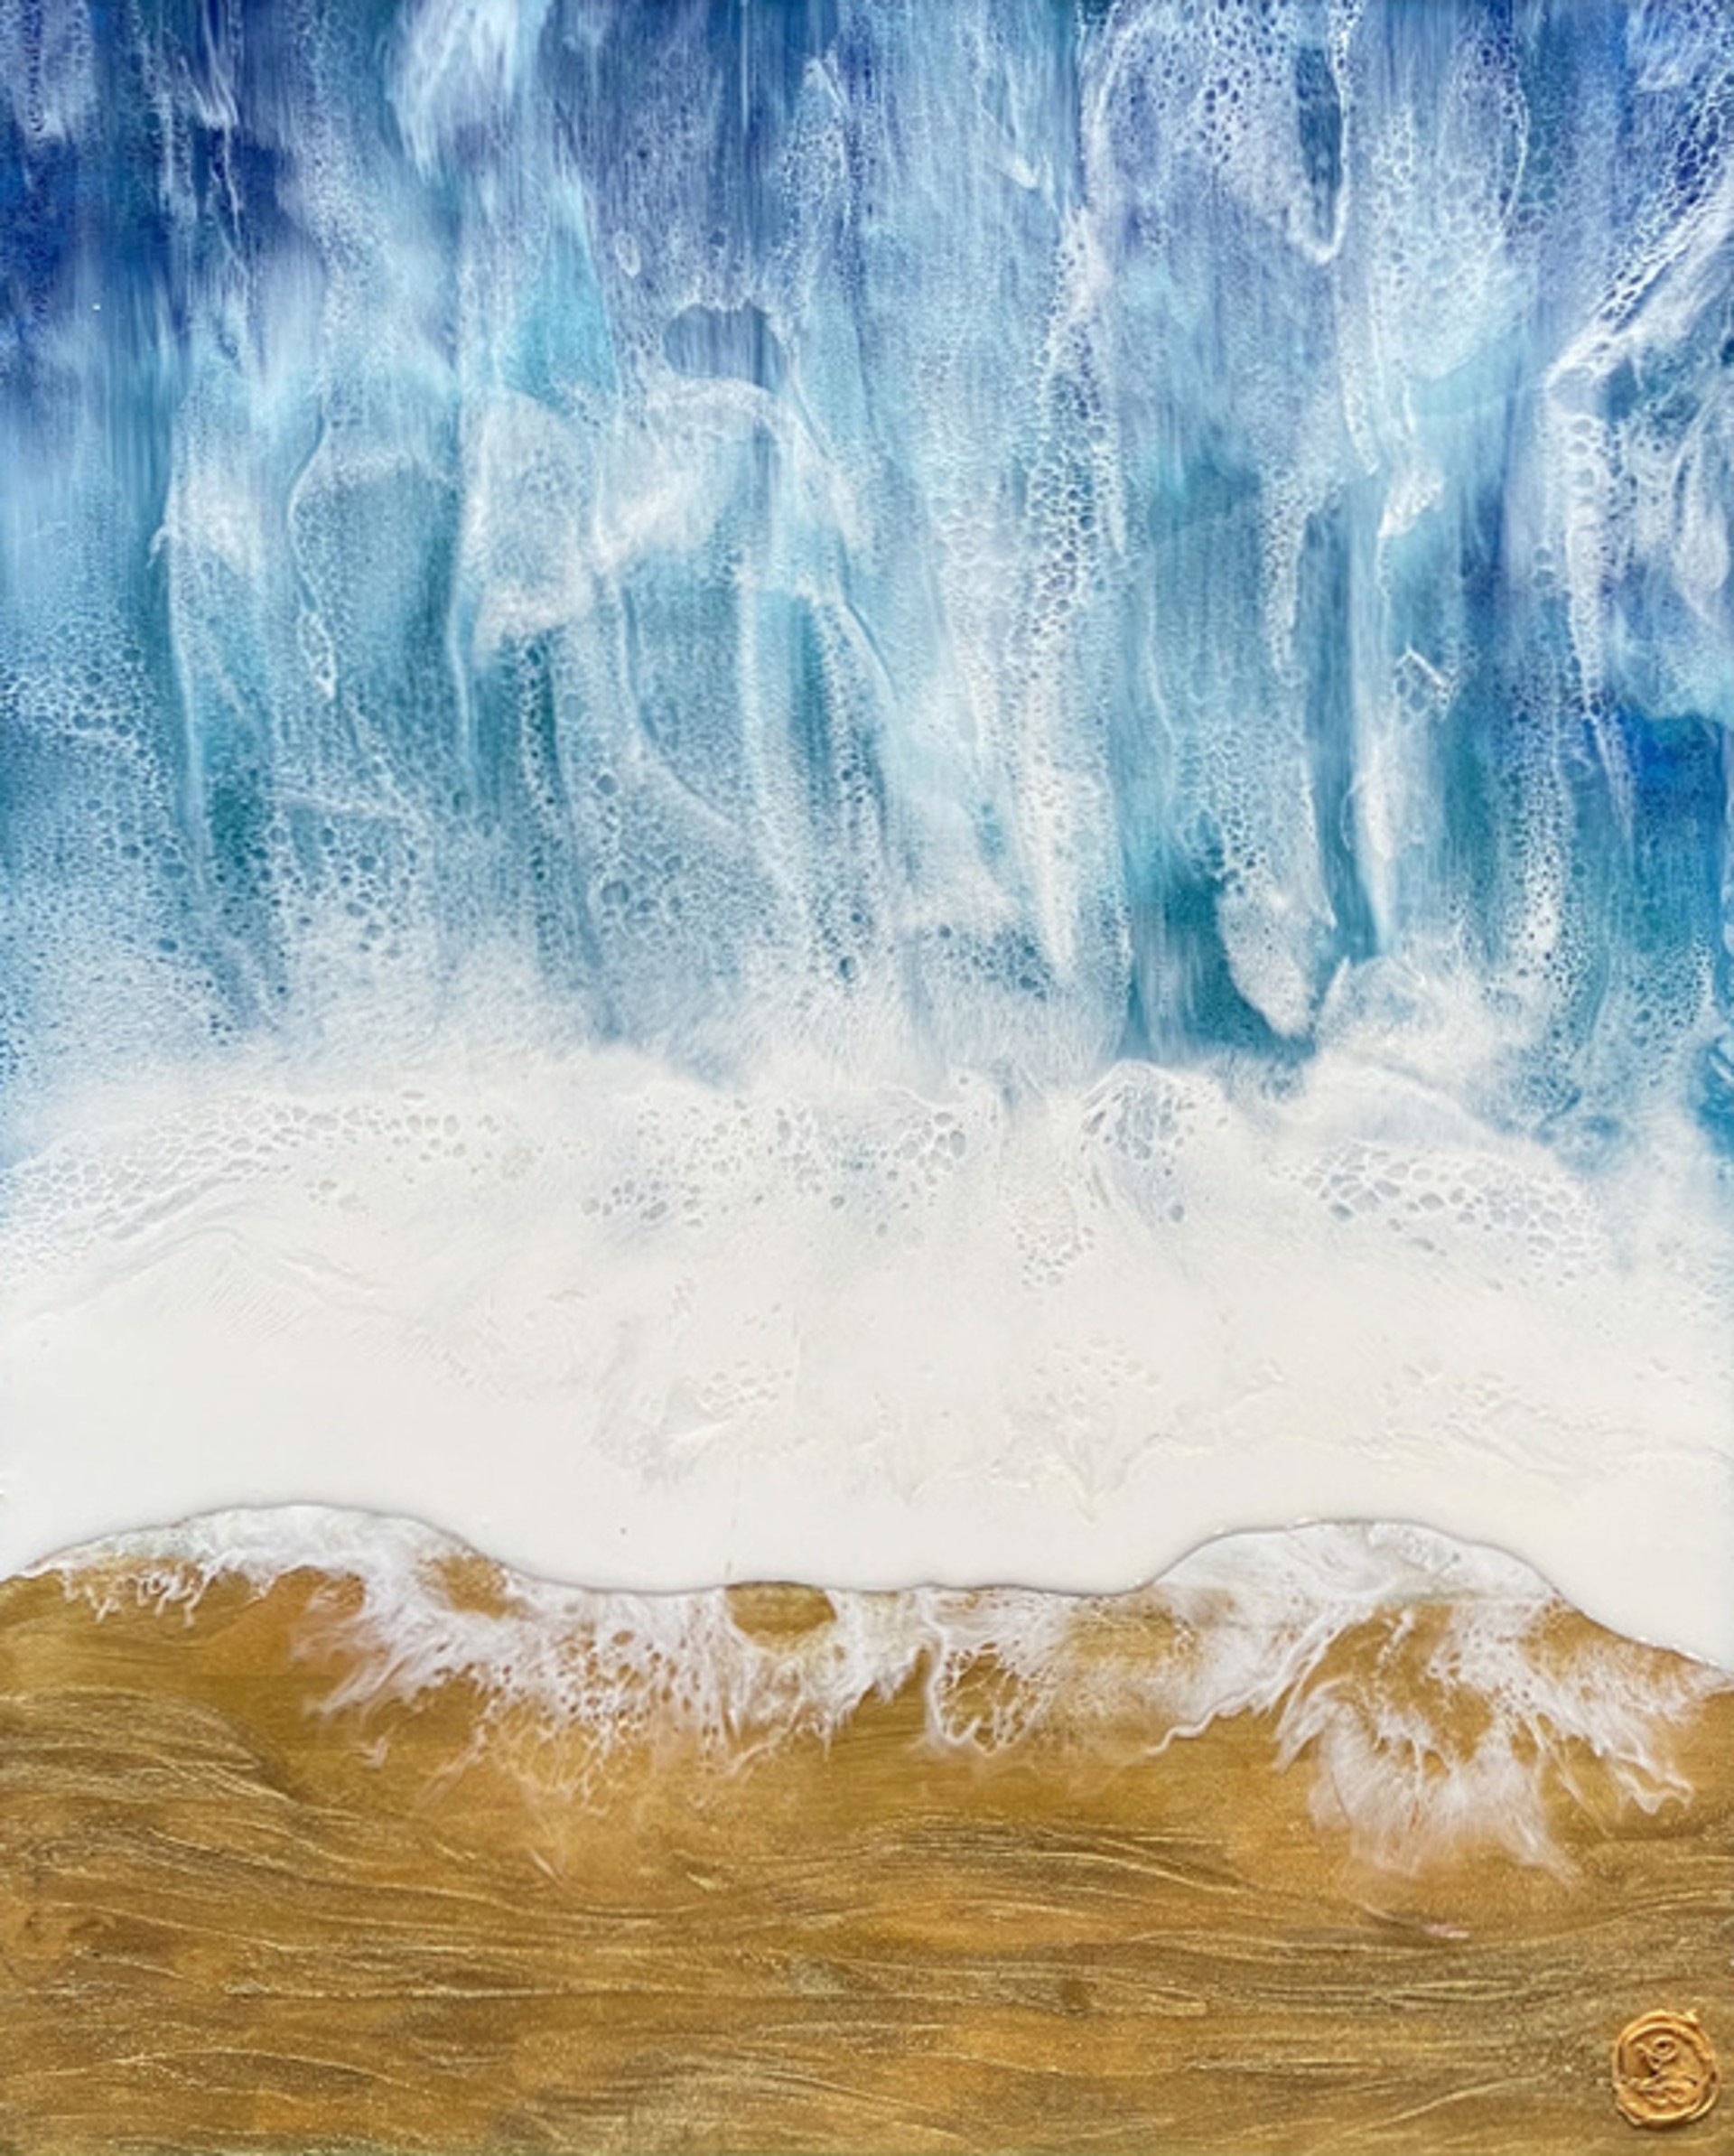 Ocean by Birgit Tode